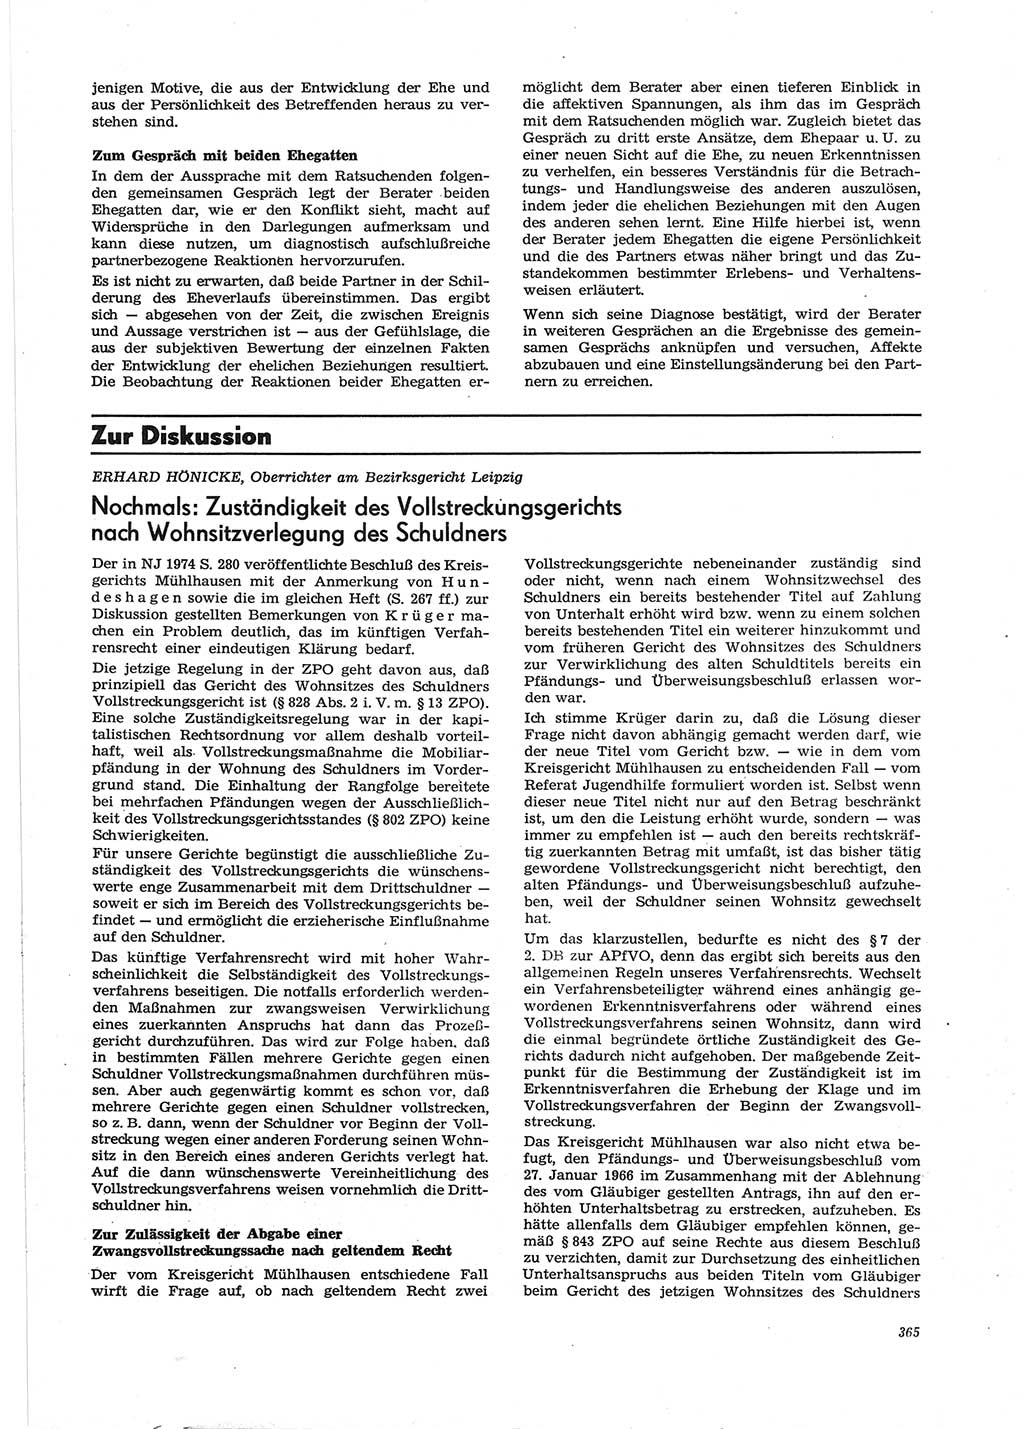 Neue Justiz (NJ), Zeitschrift für Recht und Rechtswissenschaft [Deutsche Demokratische Republik (DDR)], 28. Jahrgang 1974, Seite 365 (NJ DDR 1974, S. 365)